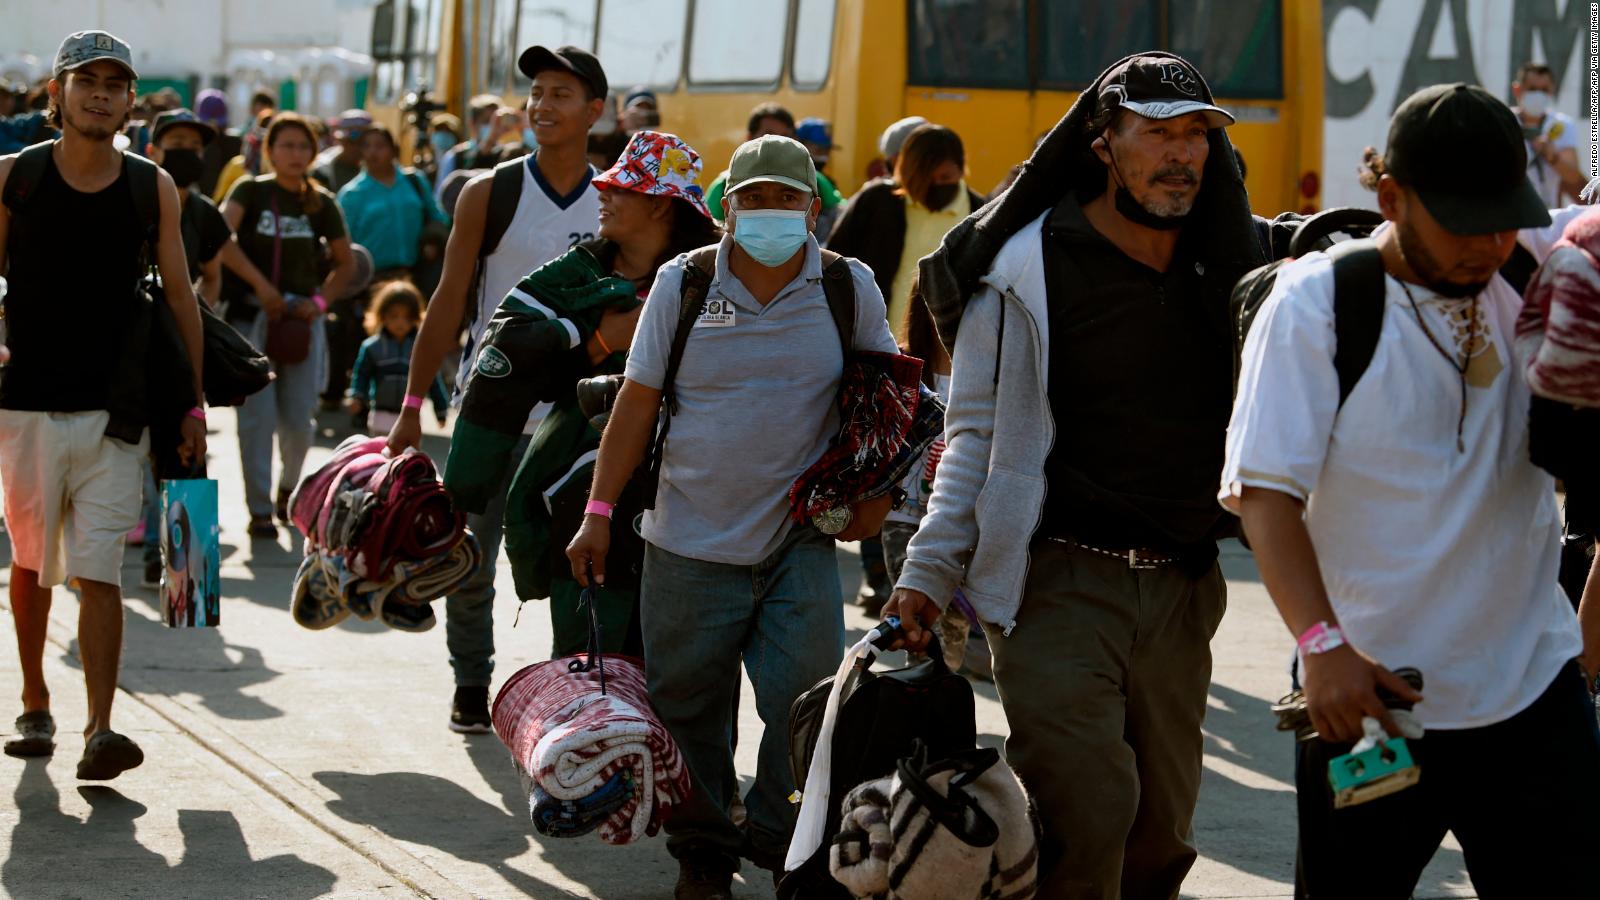 Megacaravana de migrantes parte del sur de México a EE.UU.